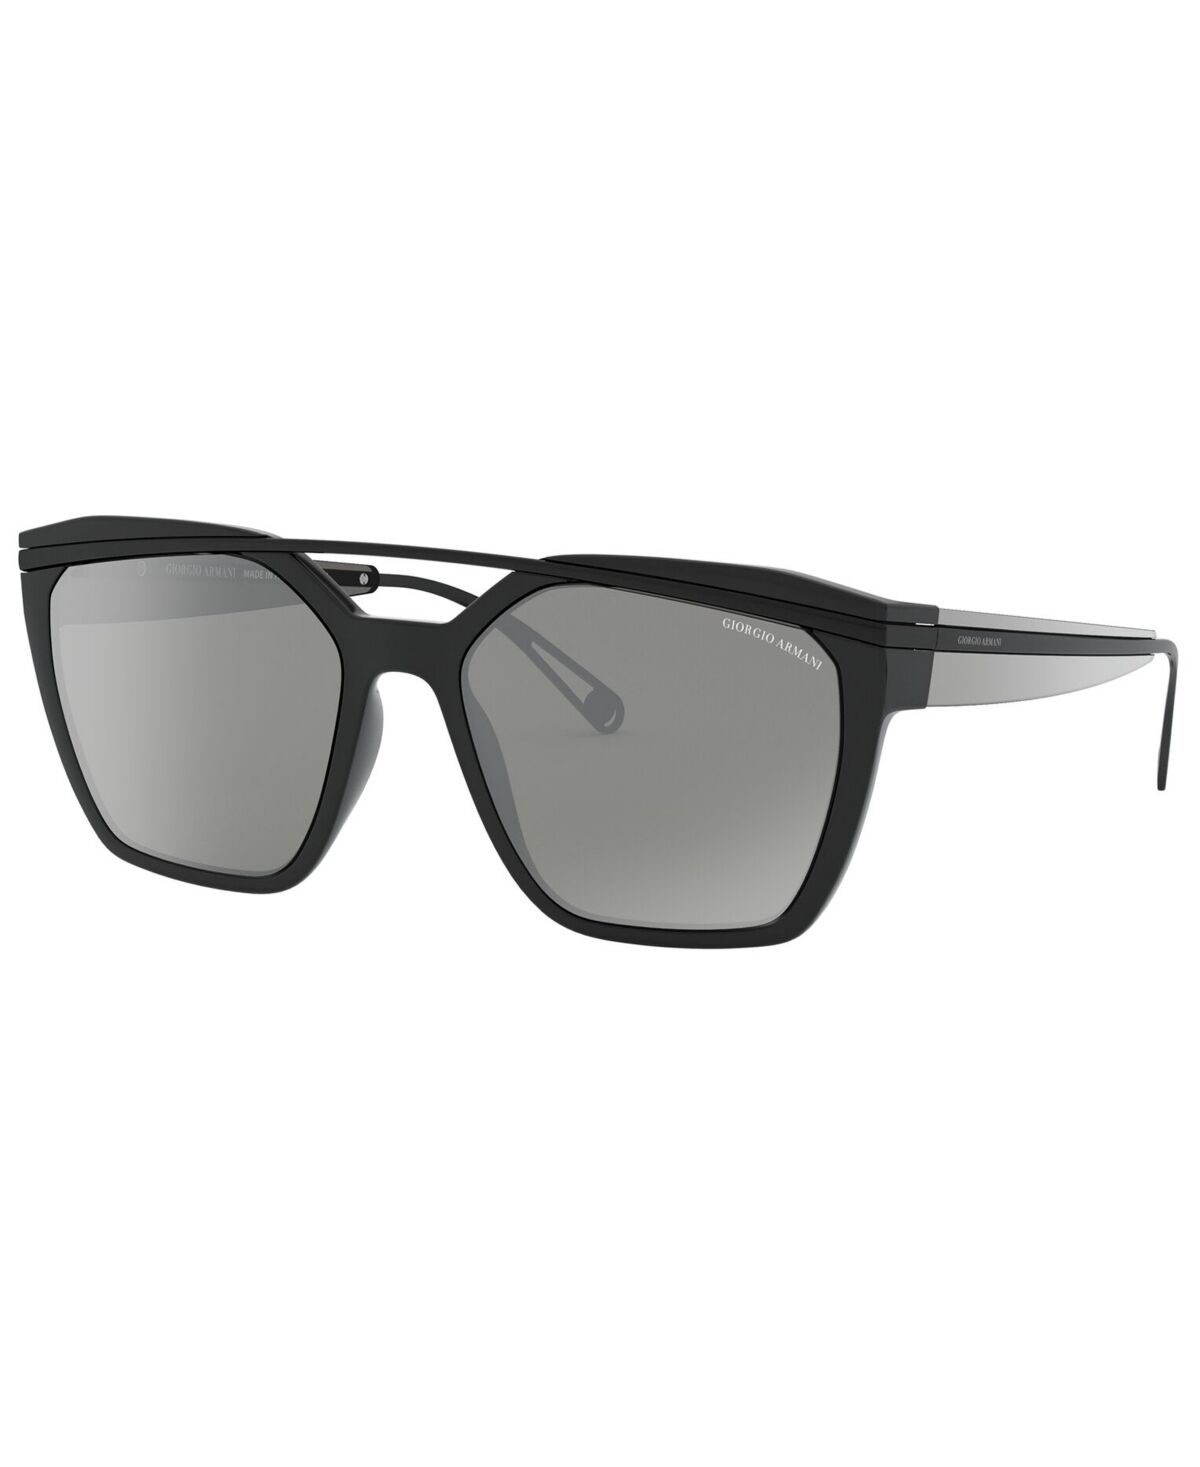 Giorgio Armani s Sunglasses, AR8125 - BLACK/GREY MIRROR SILVER